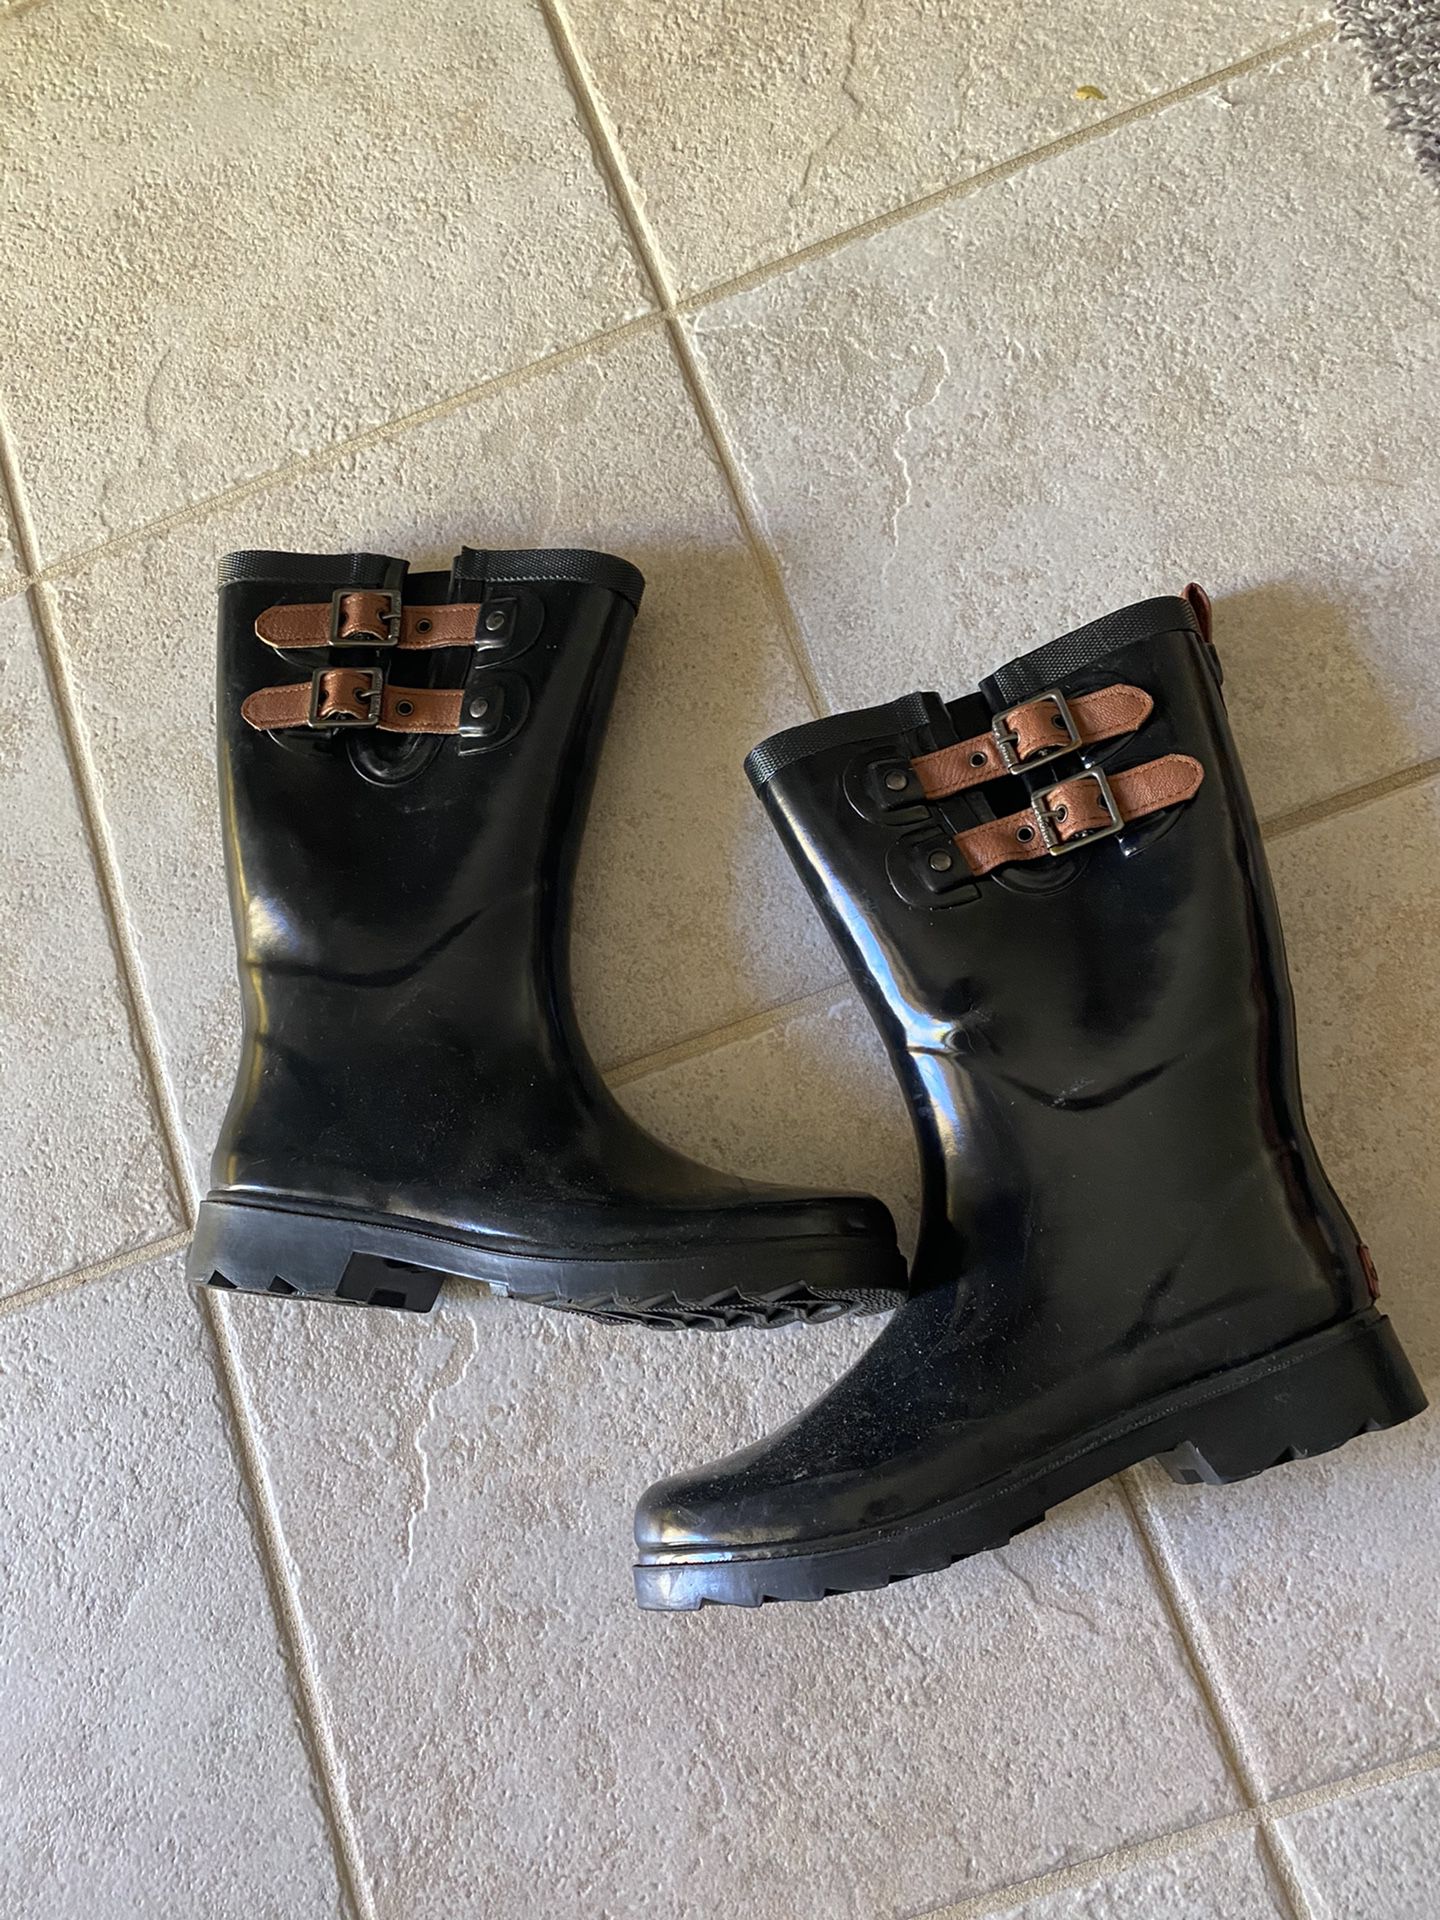 Rubber rain boots size 7/8